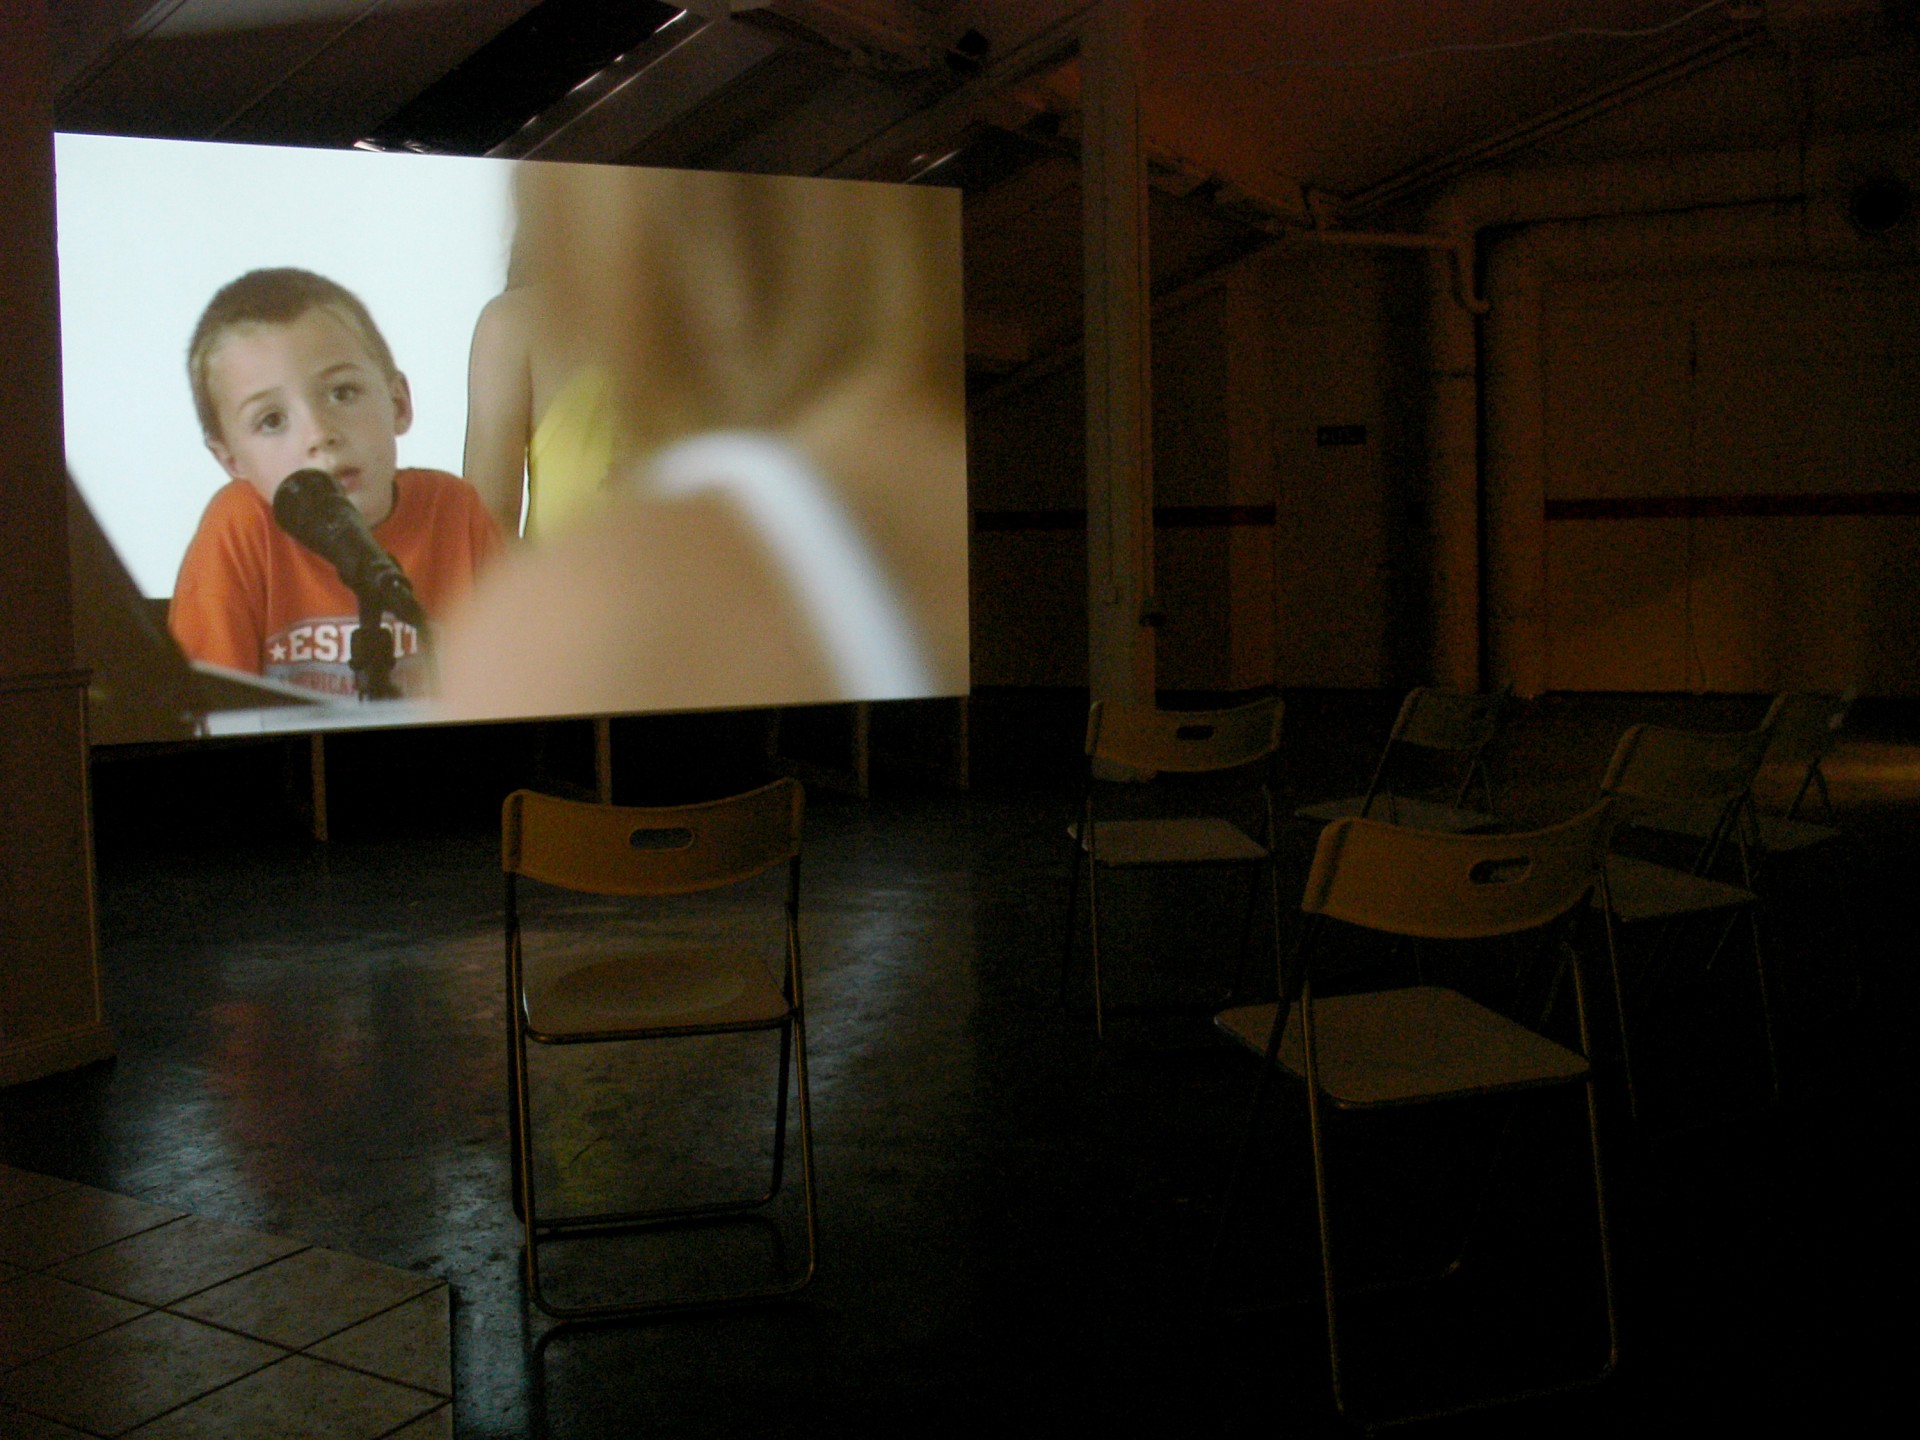 Johanna Billing More Films About Songs, Cities & Circles — Marabouparken, Sundbyberg, 2006